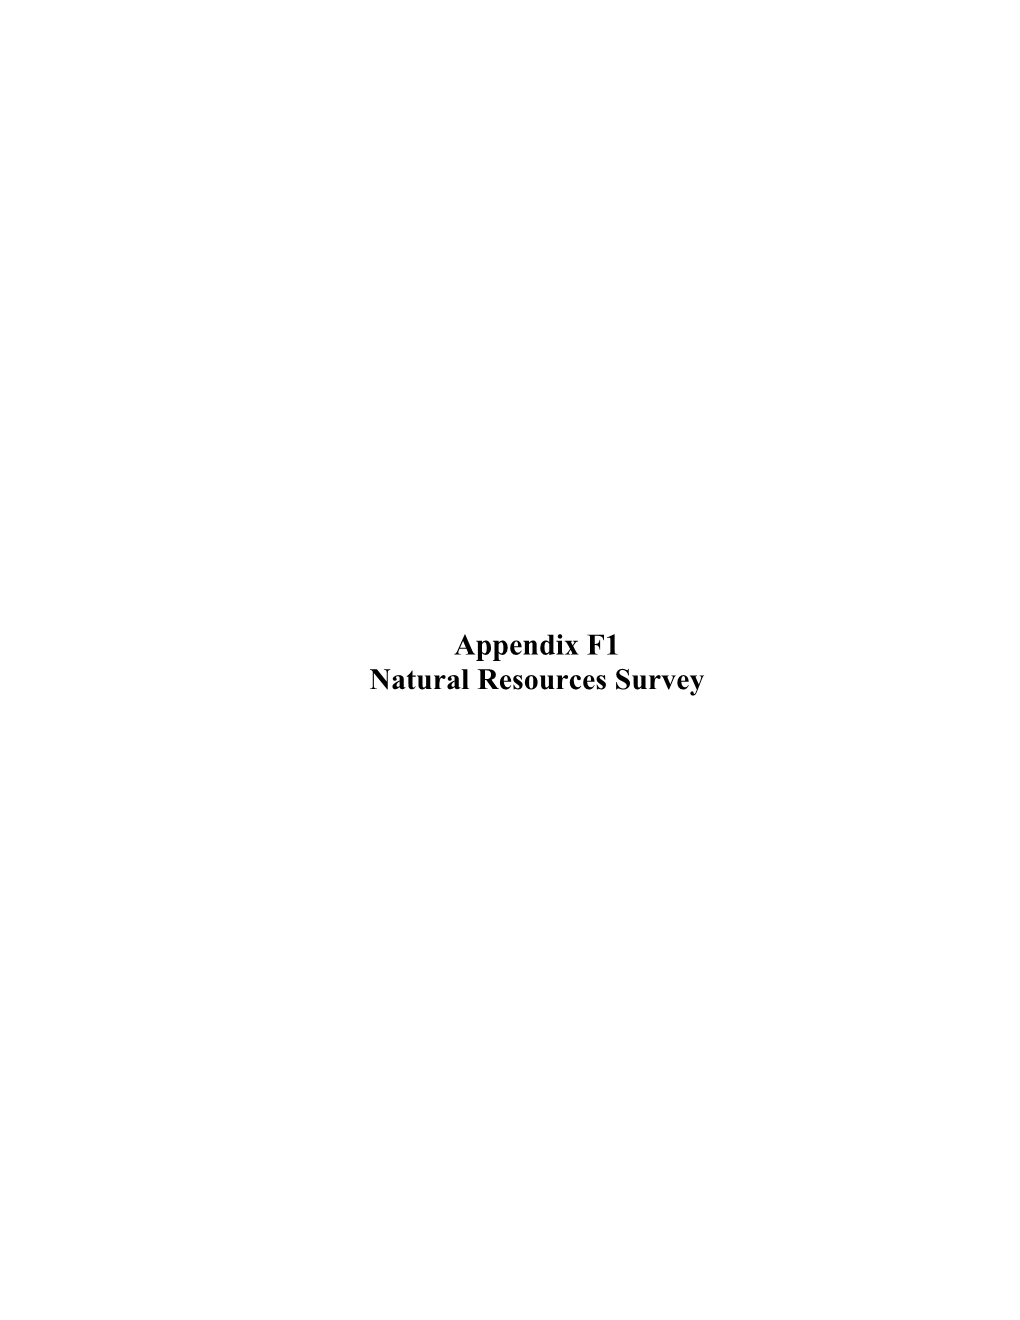 Appendix F1 Natural Resources Survey